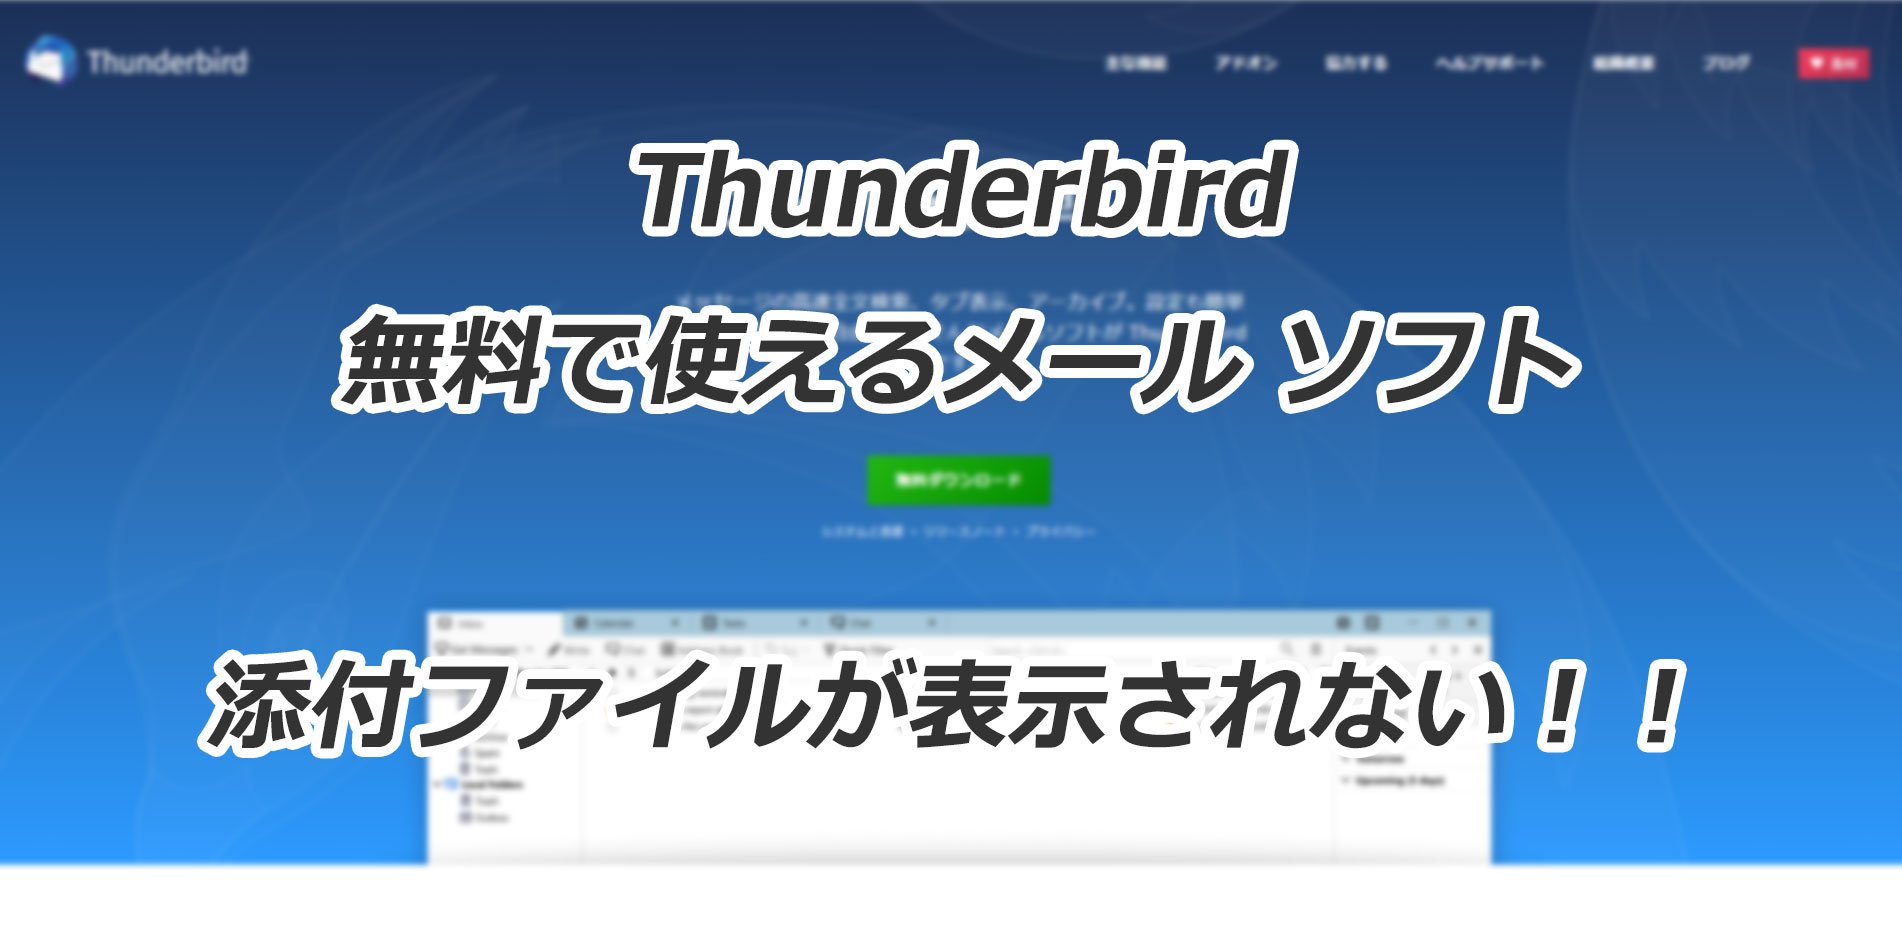 Thunderbirdで添付されているはずのファイルが表示されない問題の対応